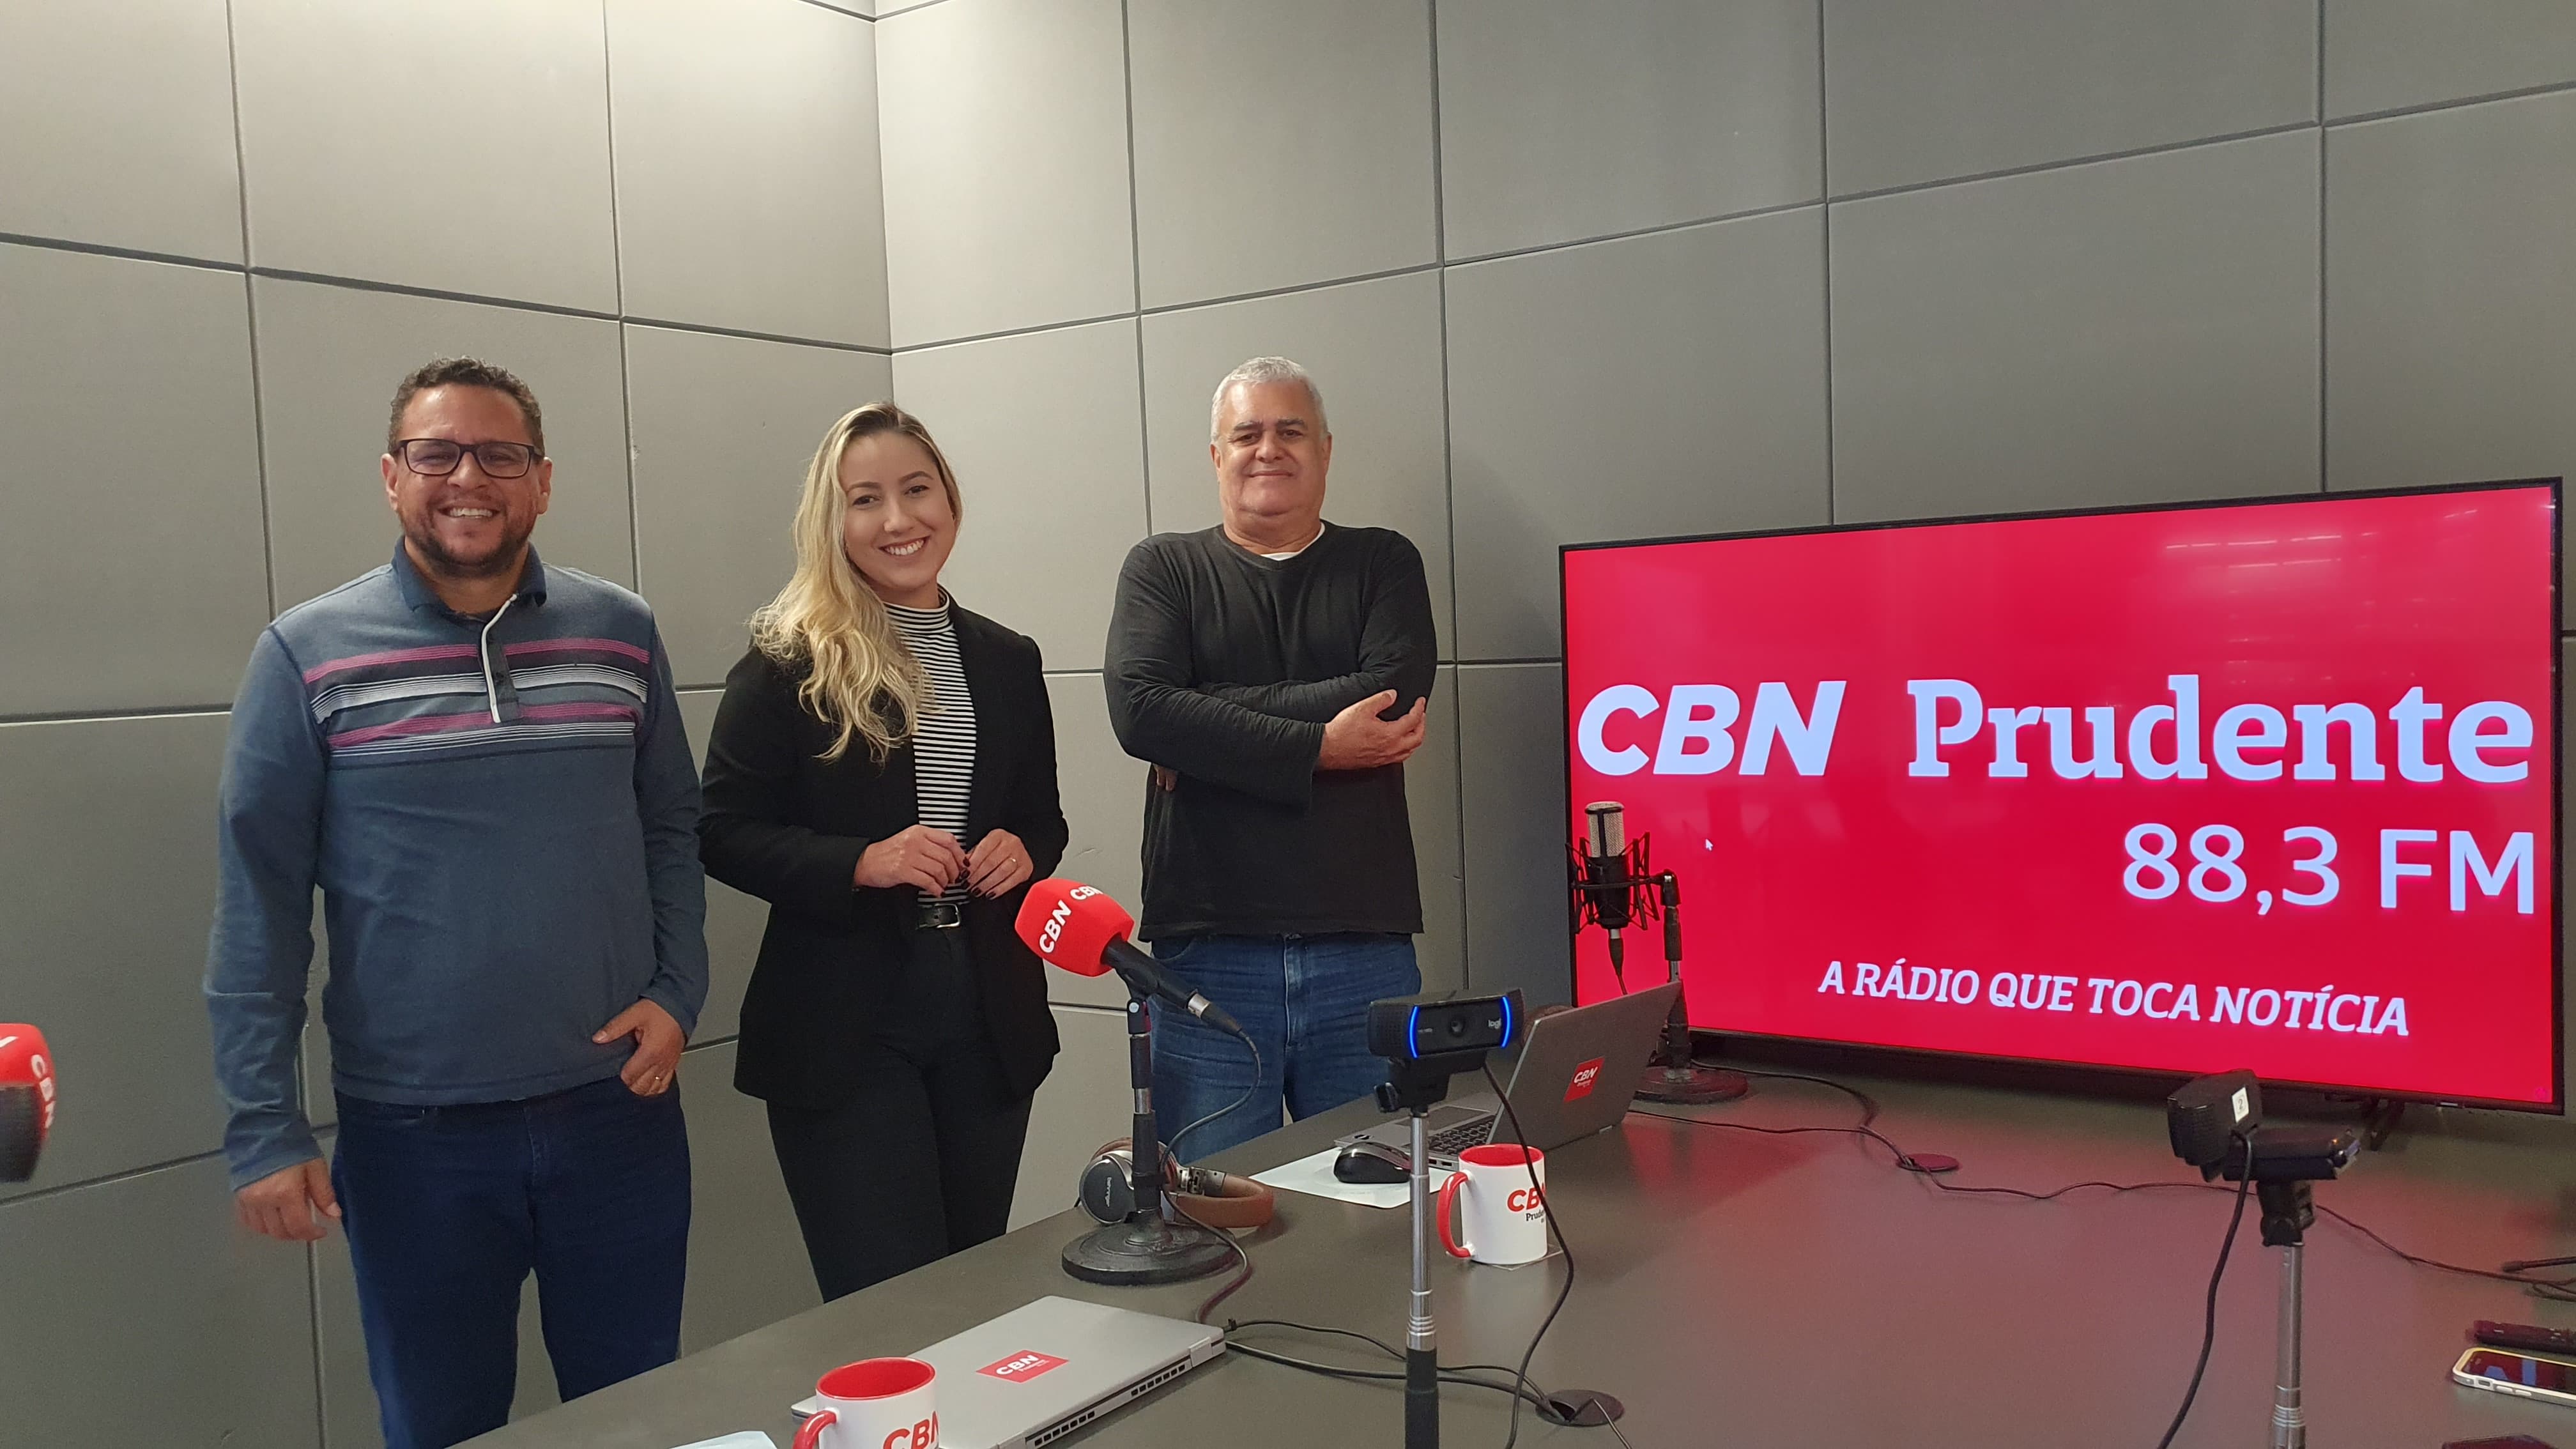 Os jornalistas Gelson Netto, Nathalia Salvato e Marcos Fiorentino fazem parte da equipe do Portal CBN Prudente